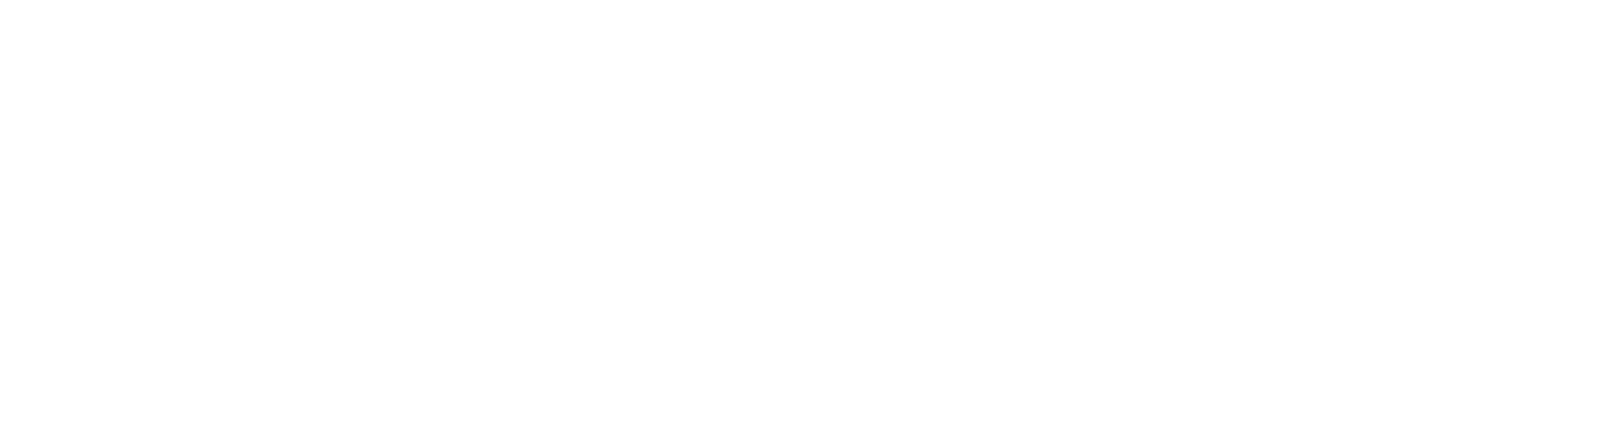 True Square